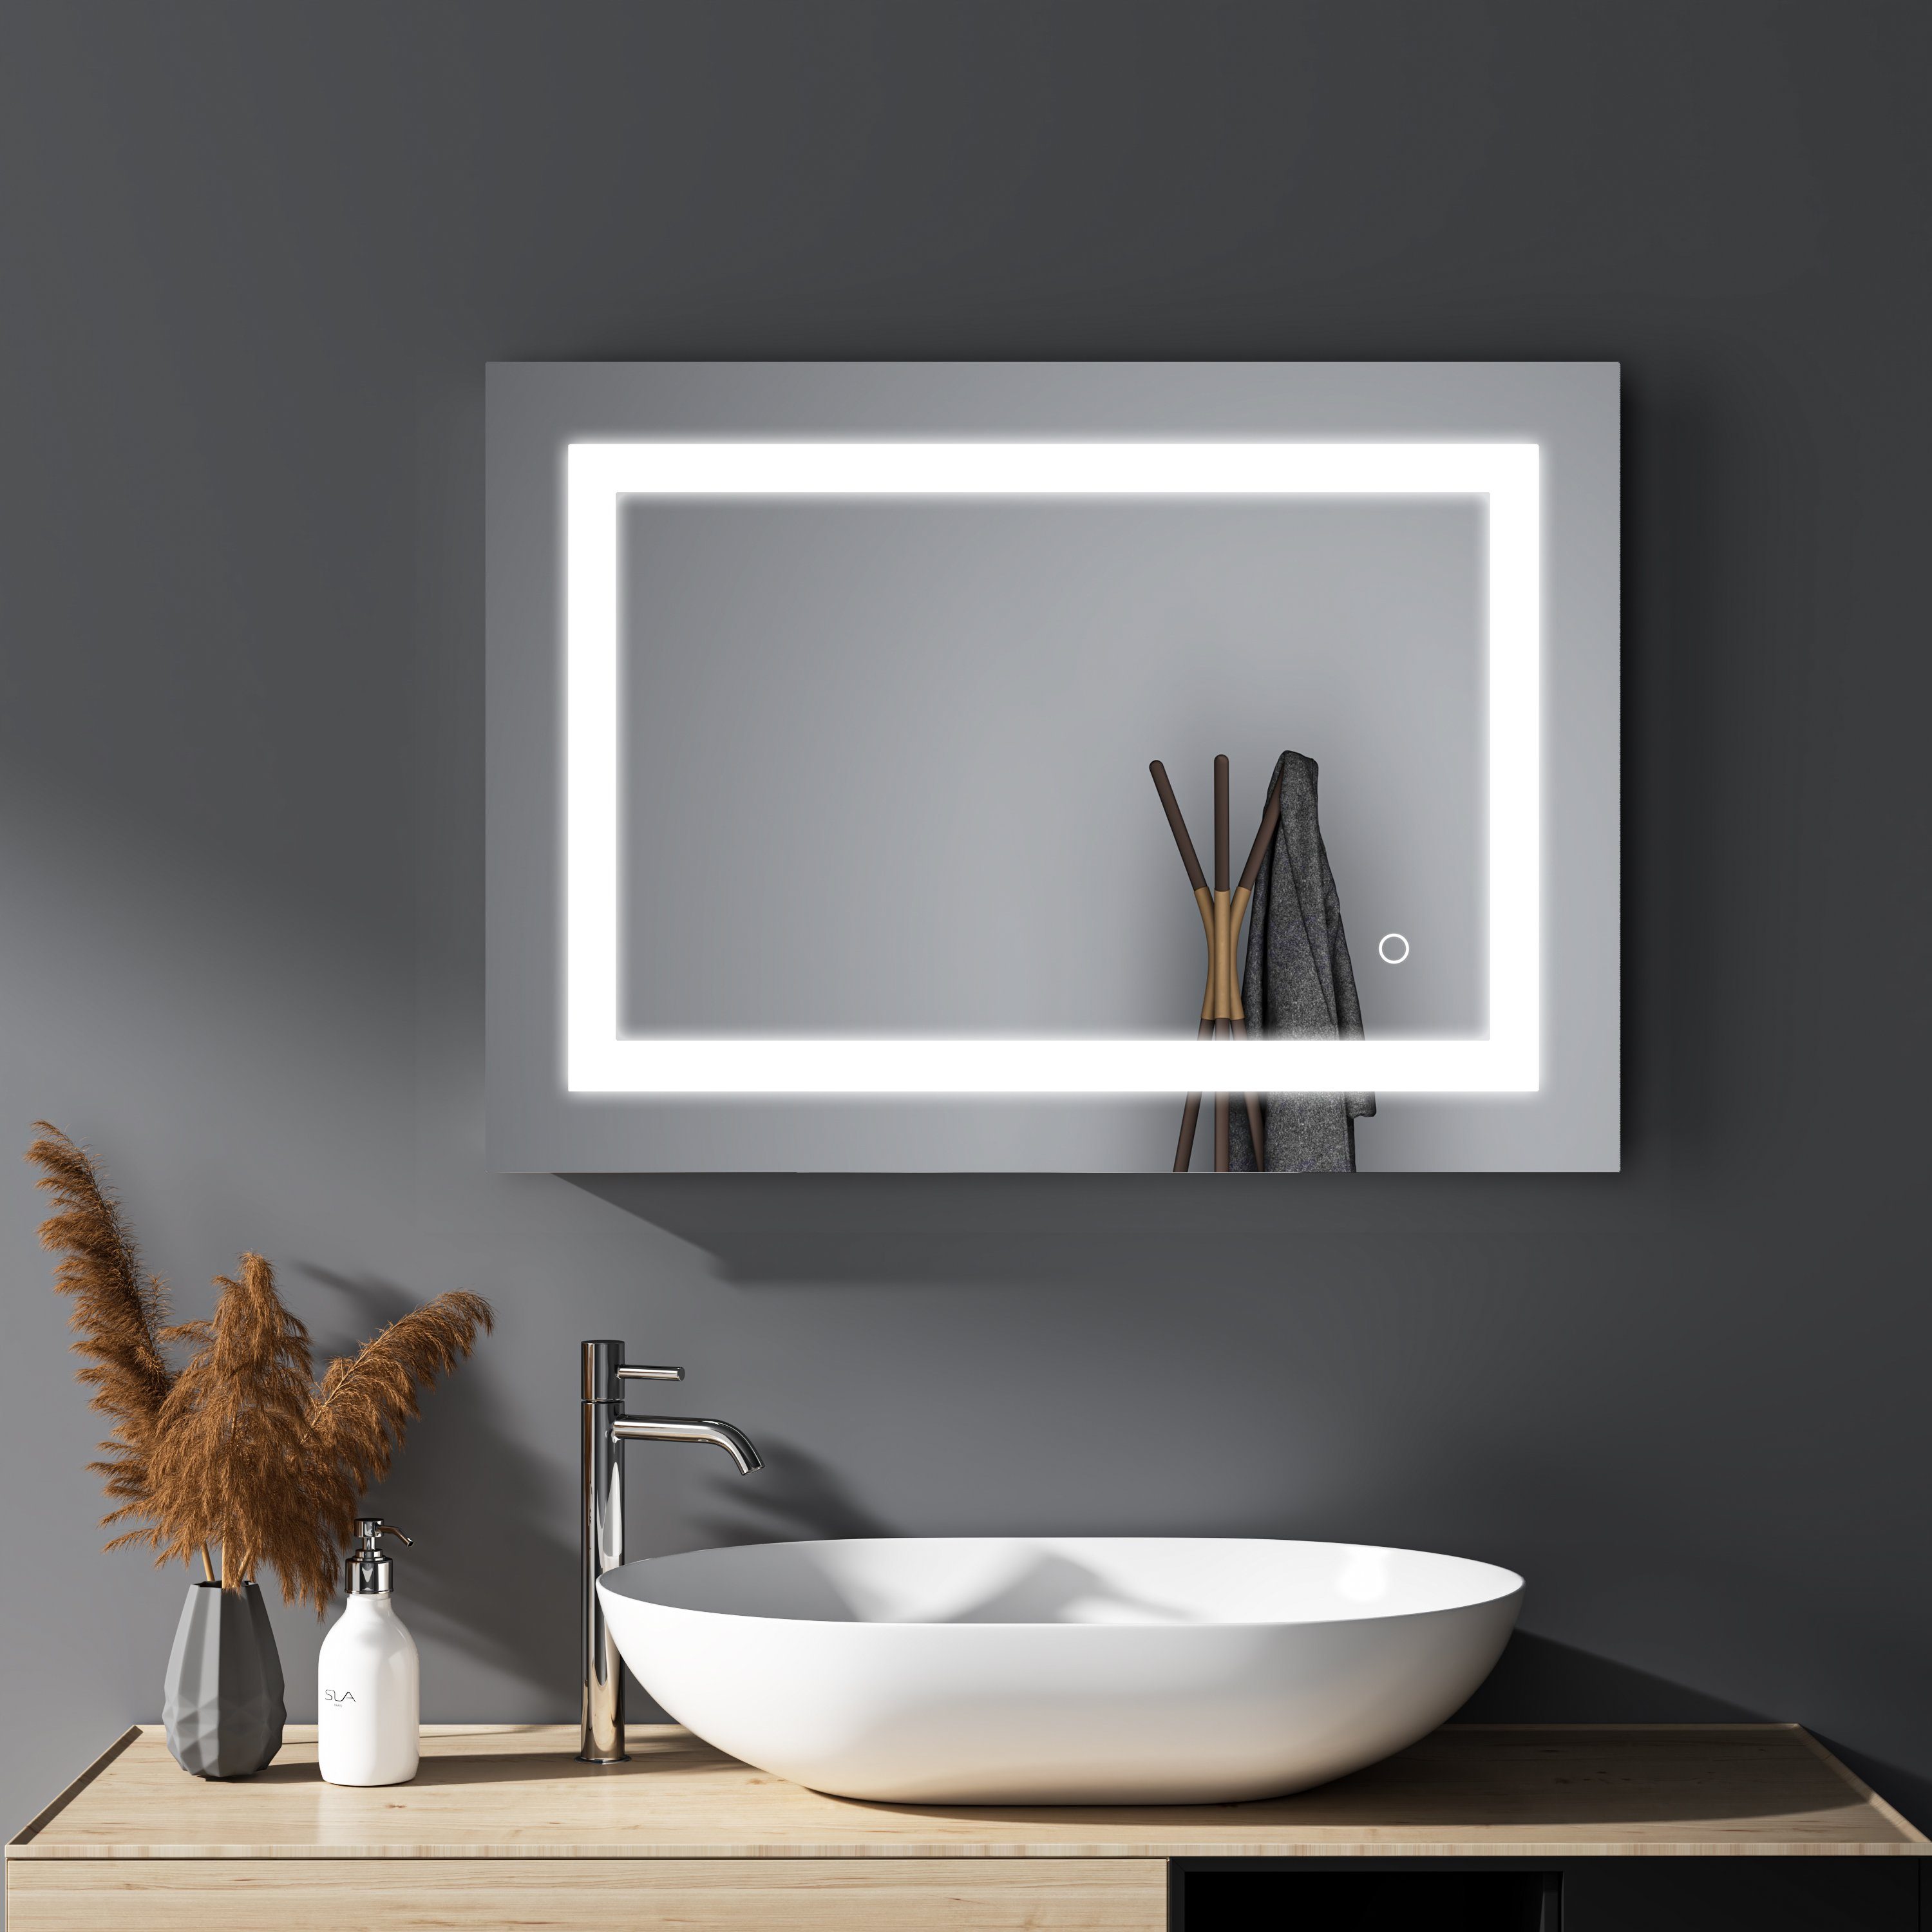 GOEZES Badspiegel Wandspiegel Badezimmerspiegel Led mit Beleuchtung 50 x 70  cm (Lichtspiegel Touch,Spiegel Bad Wand, Kaltweiß), energiesparender,IP44